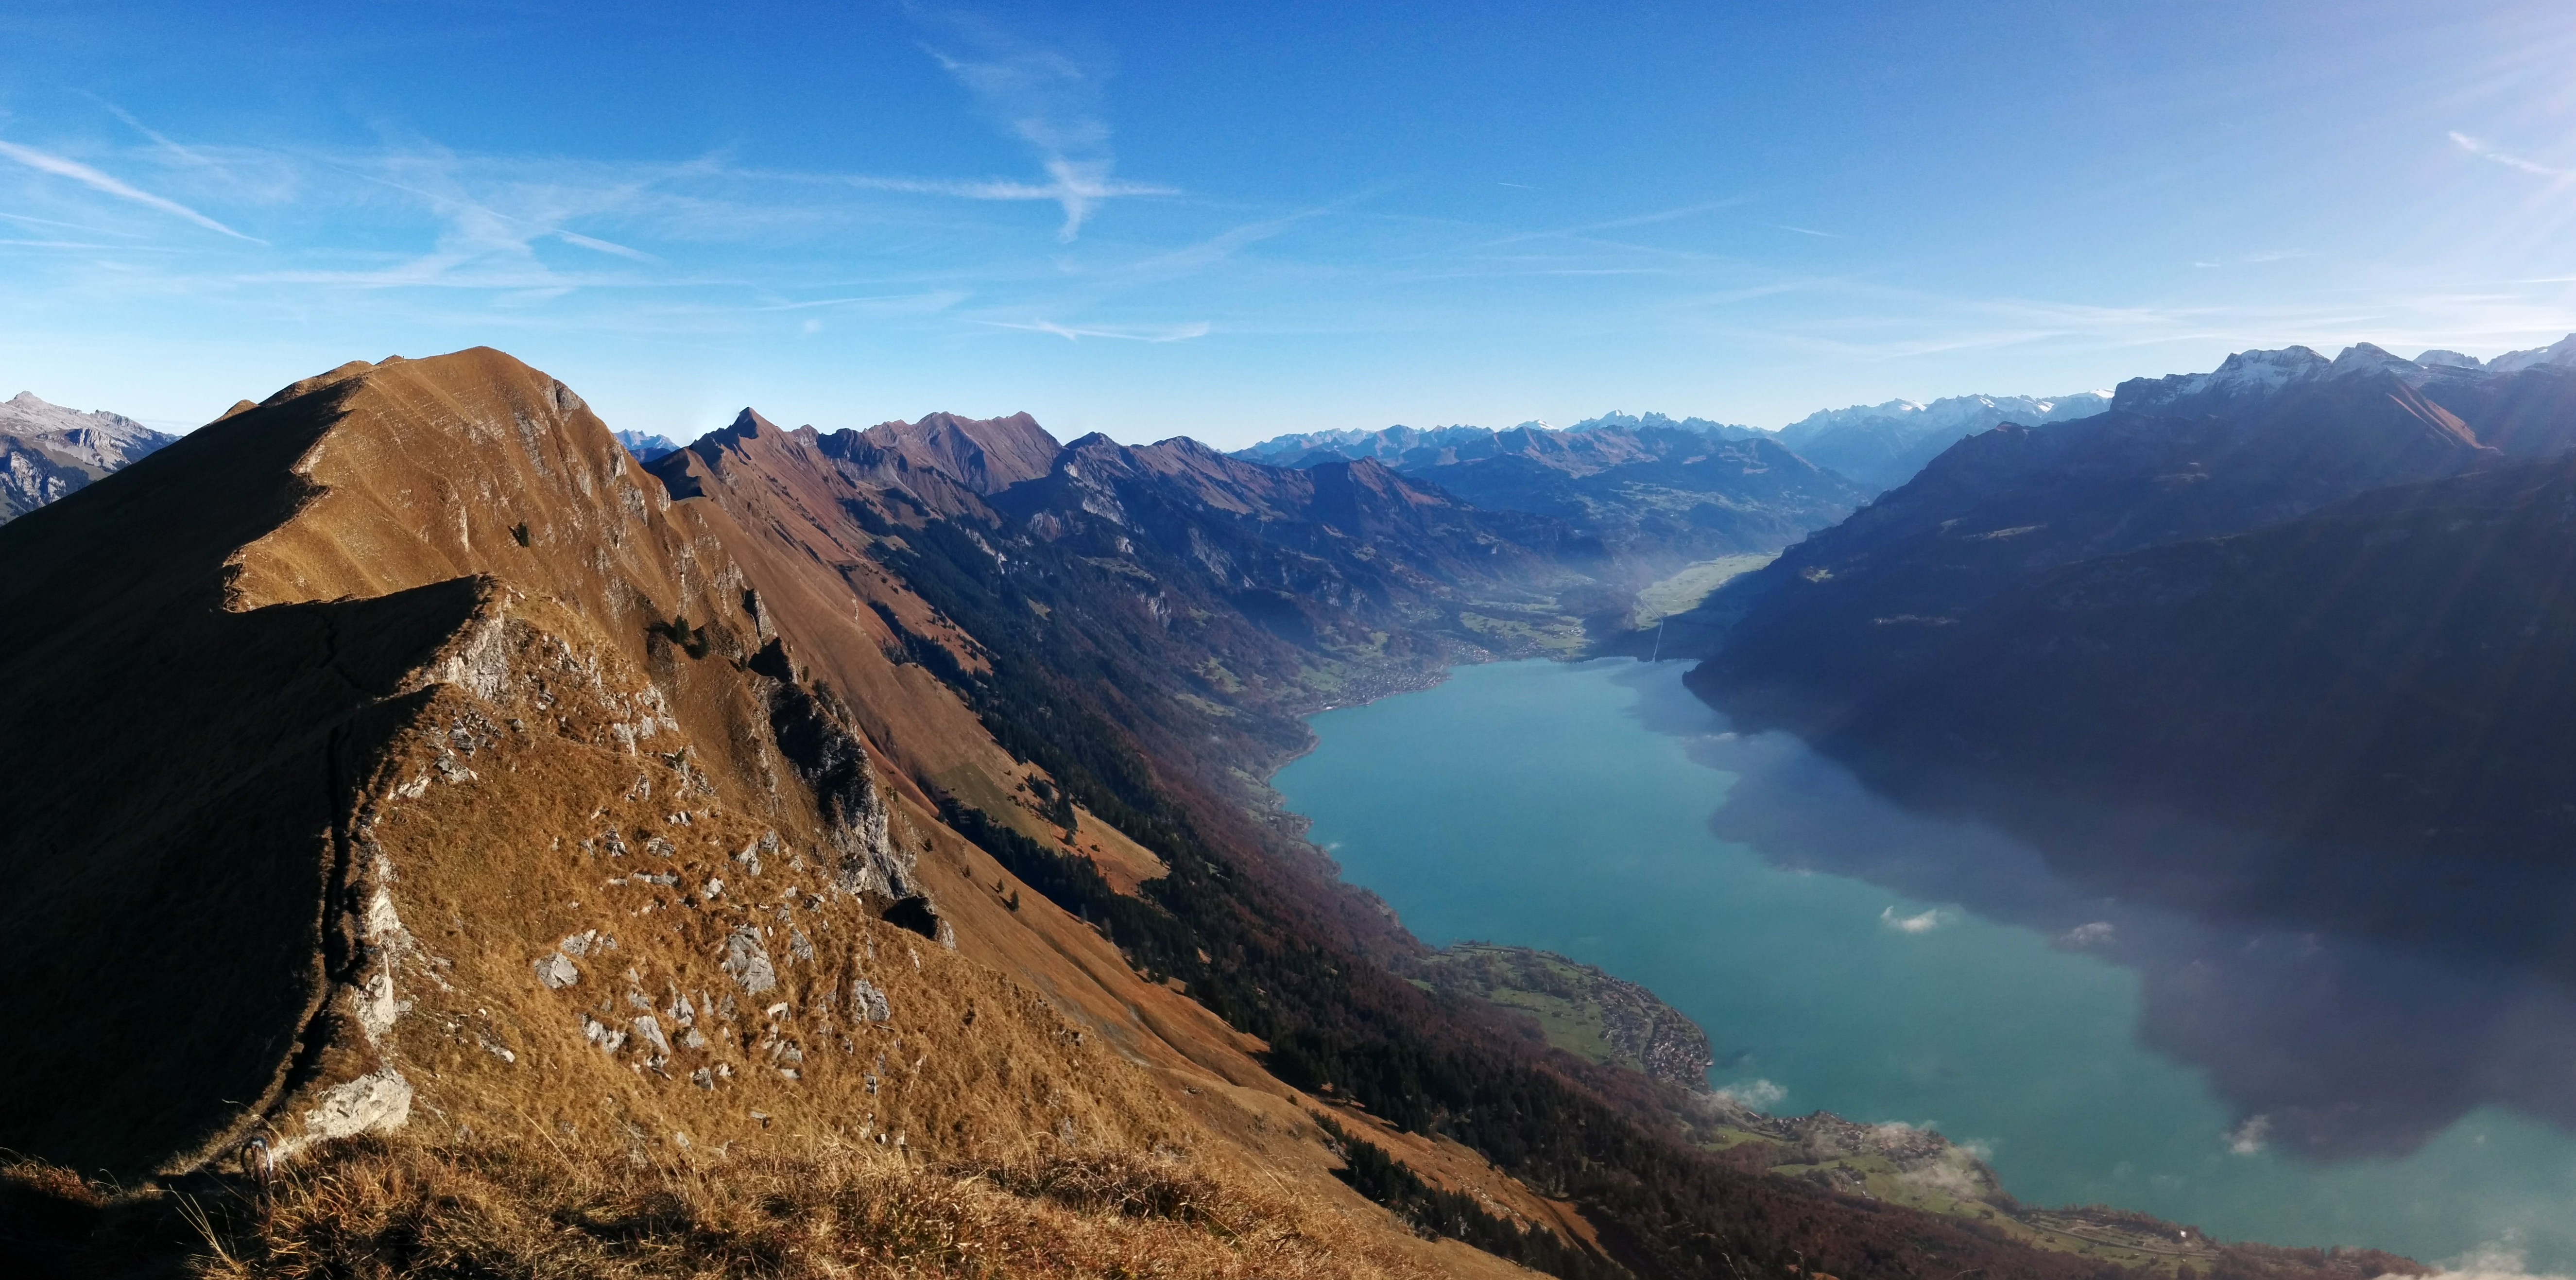 The ridge of the Augstmatthorn, Interlaken Switzerland